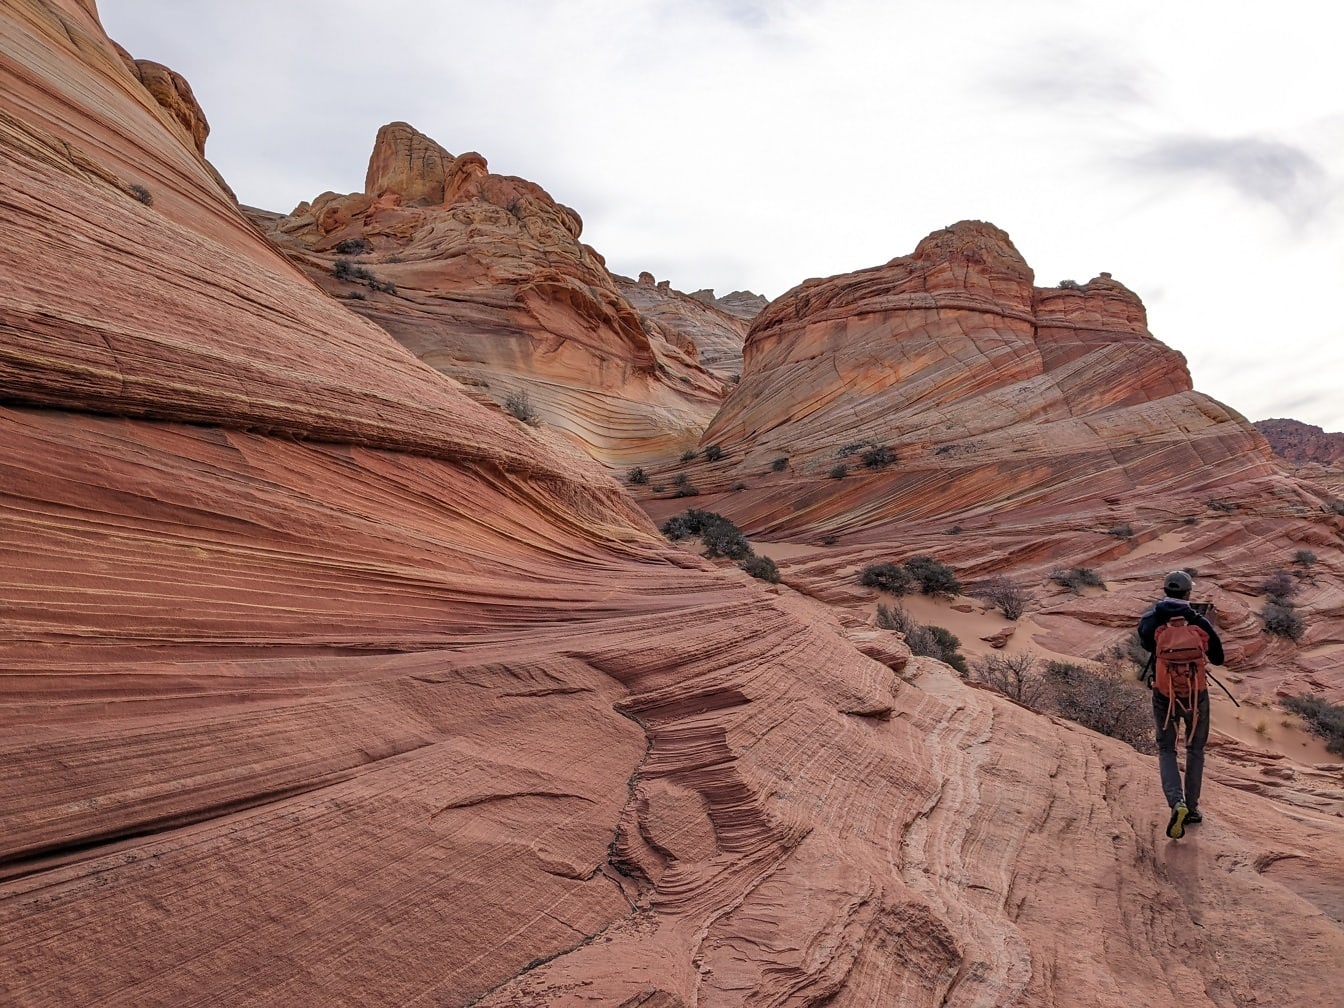 Excursionista mochilero caminando por un acantilado desértico en un parque natural